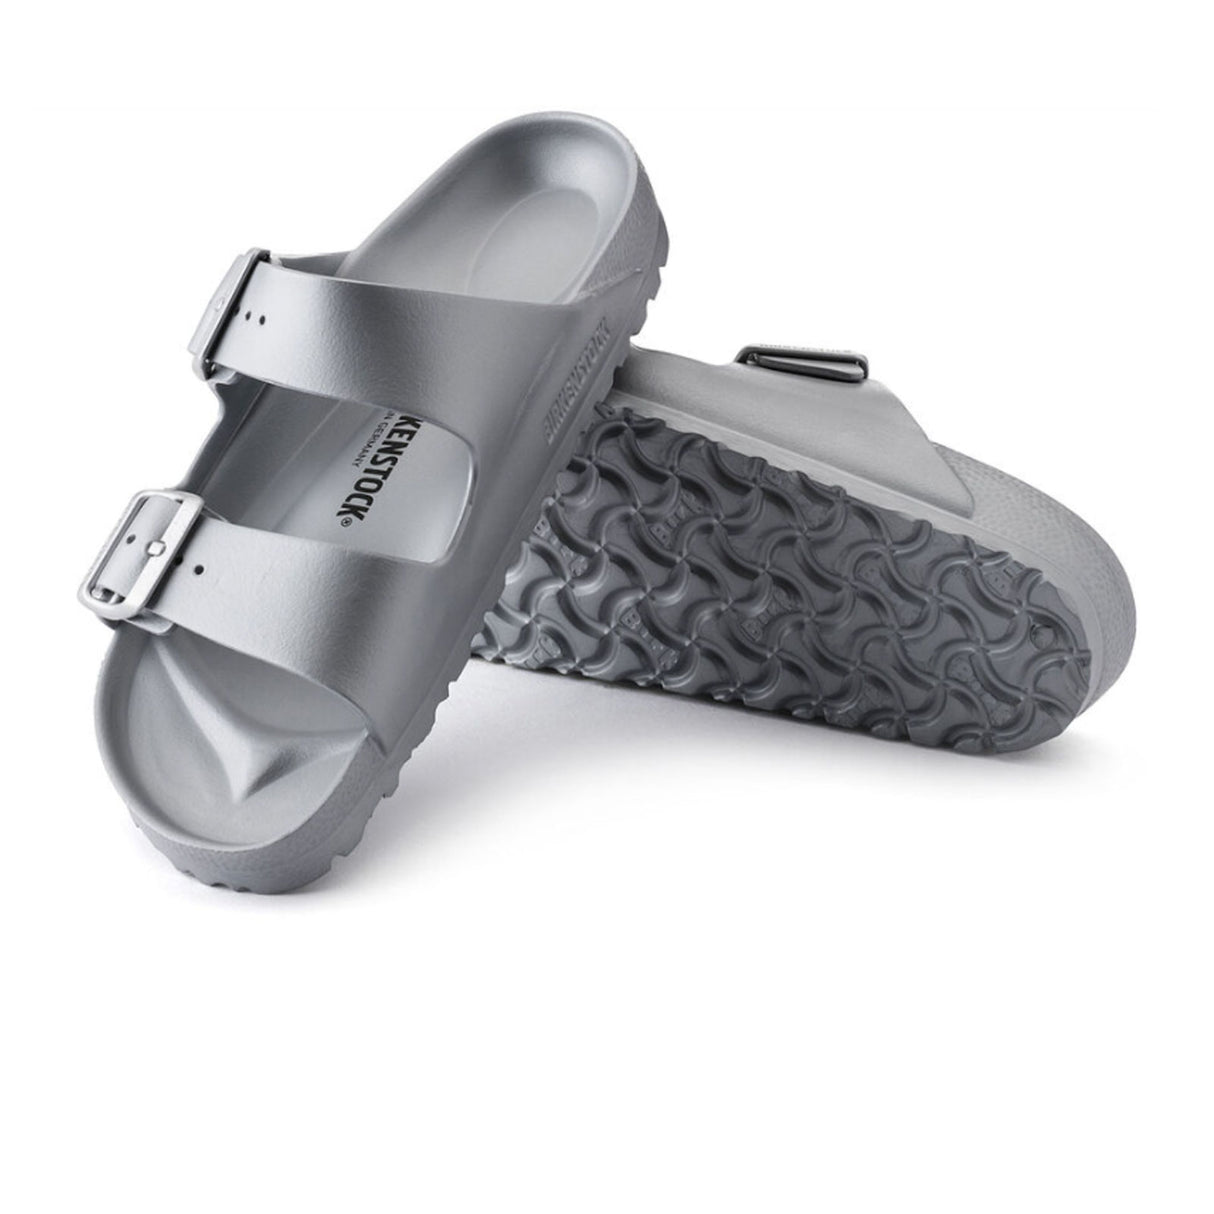 Birkenstock Arizona EVA (Men) - Metallic Silver Sandals - Slide - The Heel Shoe Fitters